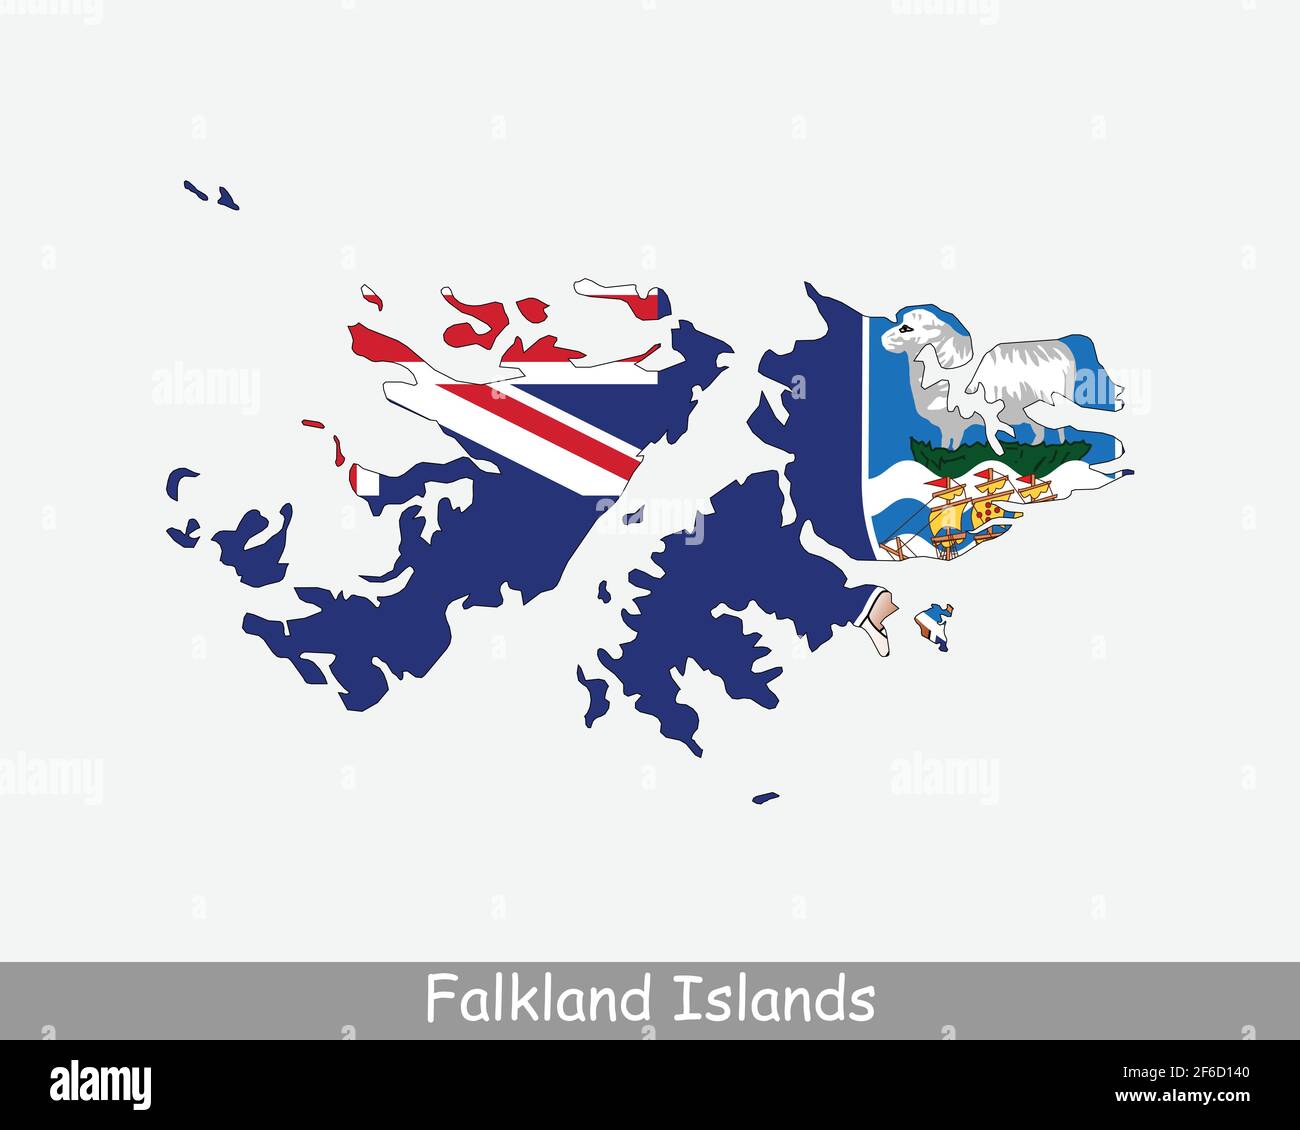 Falklandinseln Karte Flagge. Karte der Falklandinseln mit isolierter Flagge auf weißem Hintergrund. British Overseas Territory. Vektorgrafik. Stock Vektor